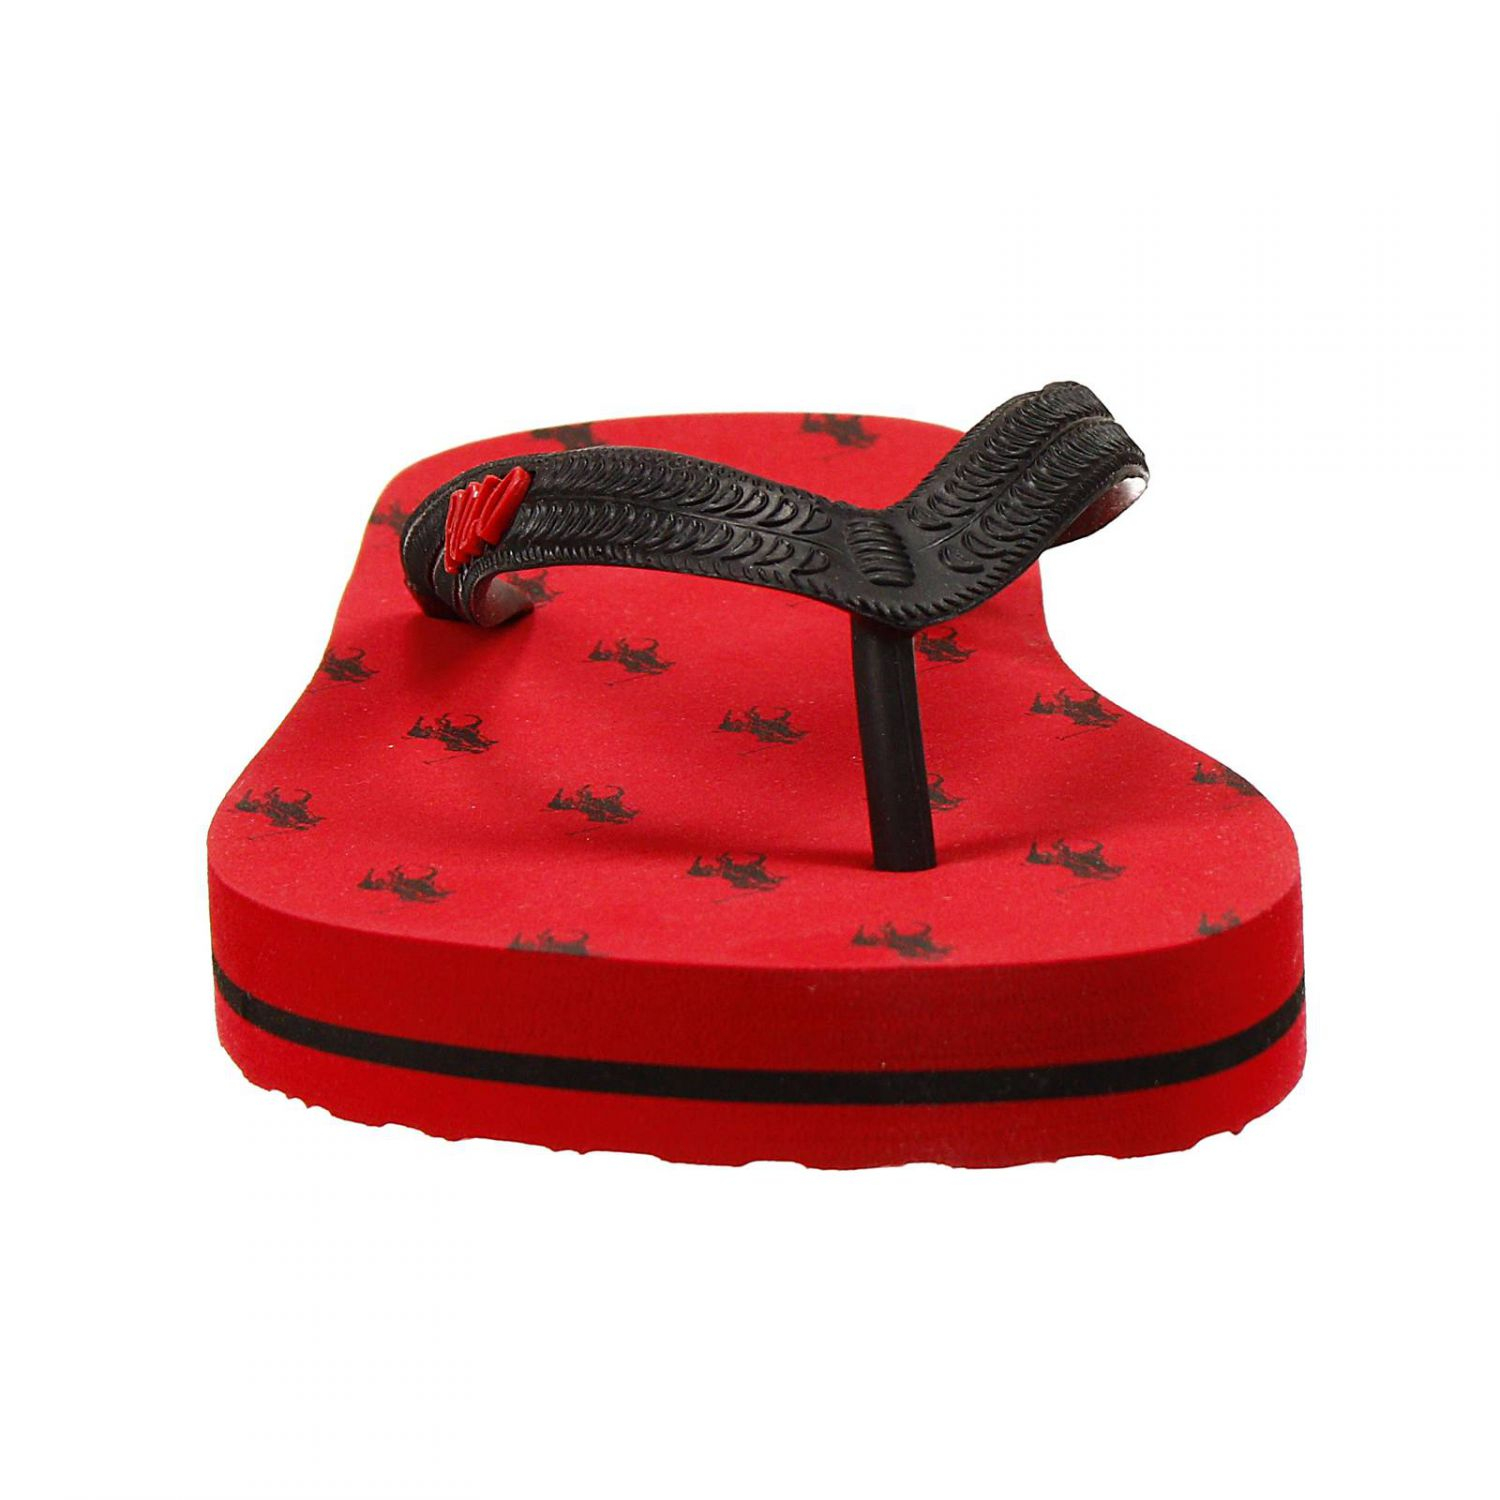  Polo  ralph lauren Shoes  Hewie Ii Rubber Flip Flops  in Red 